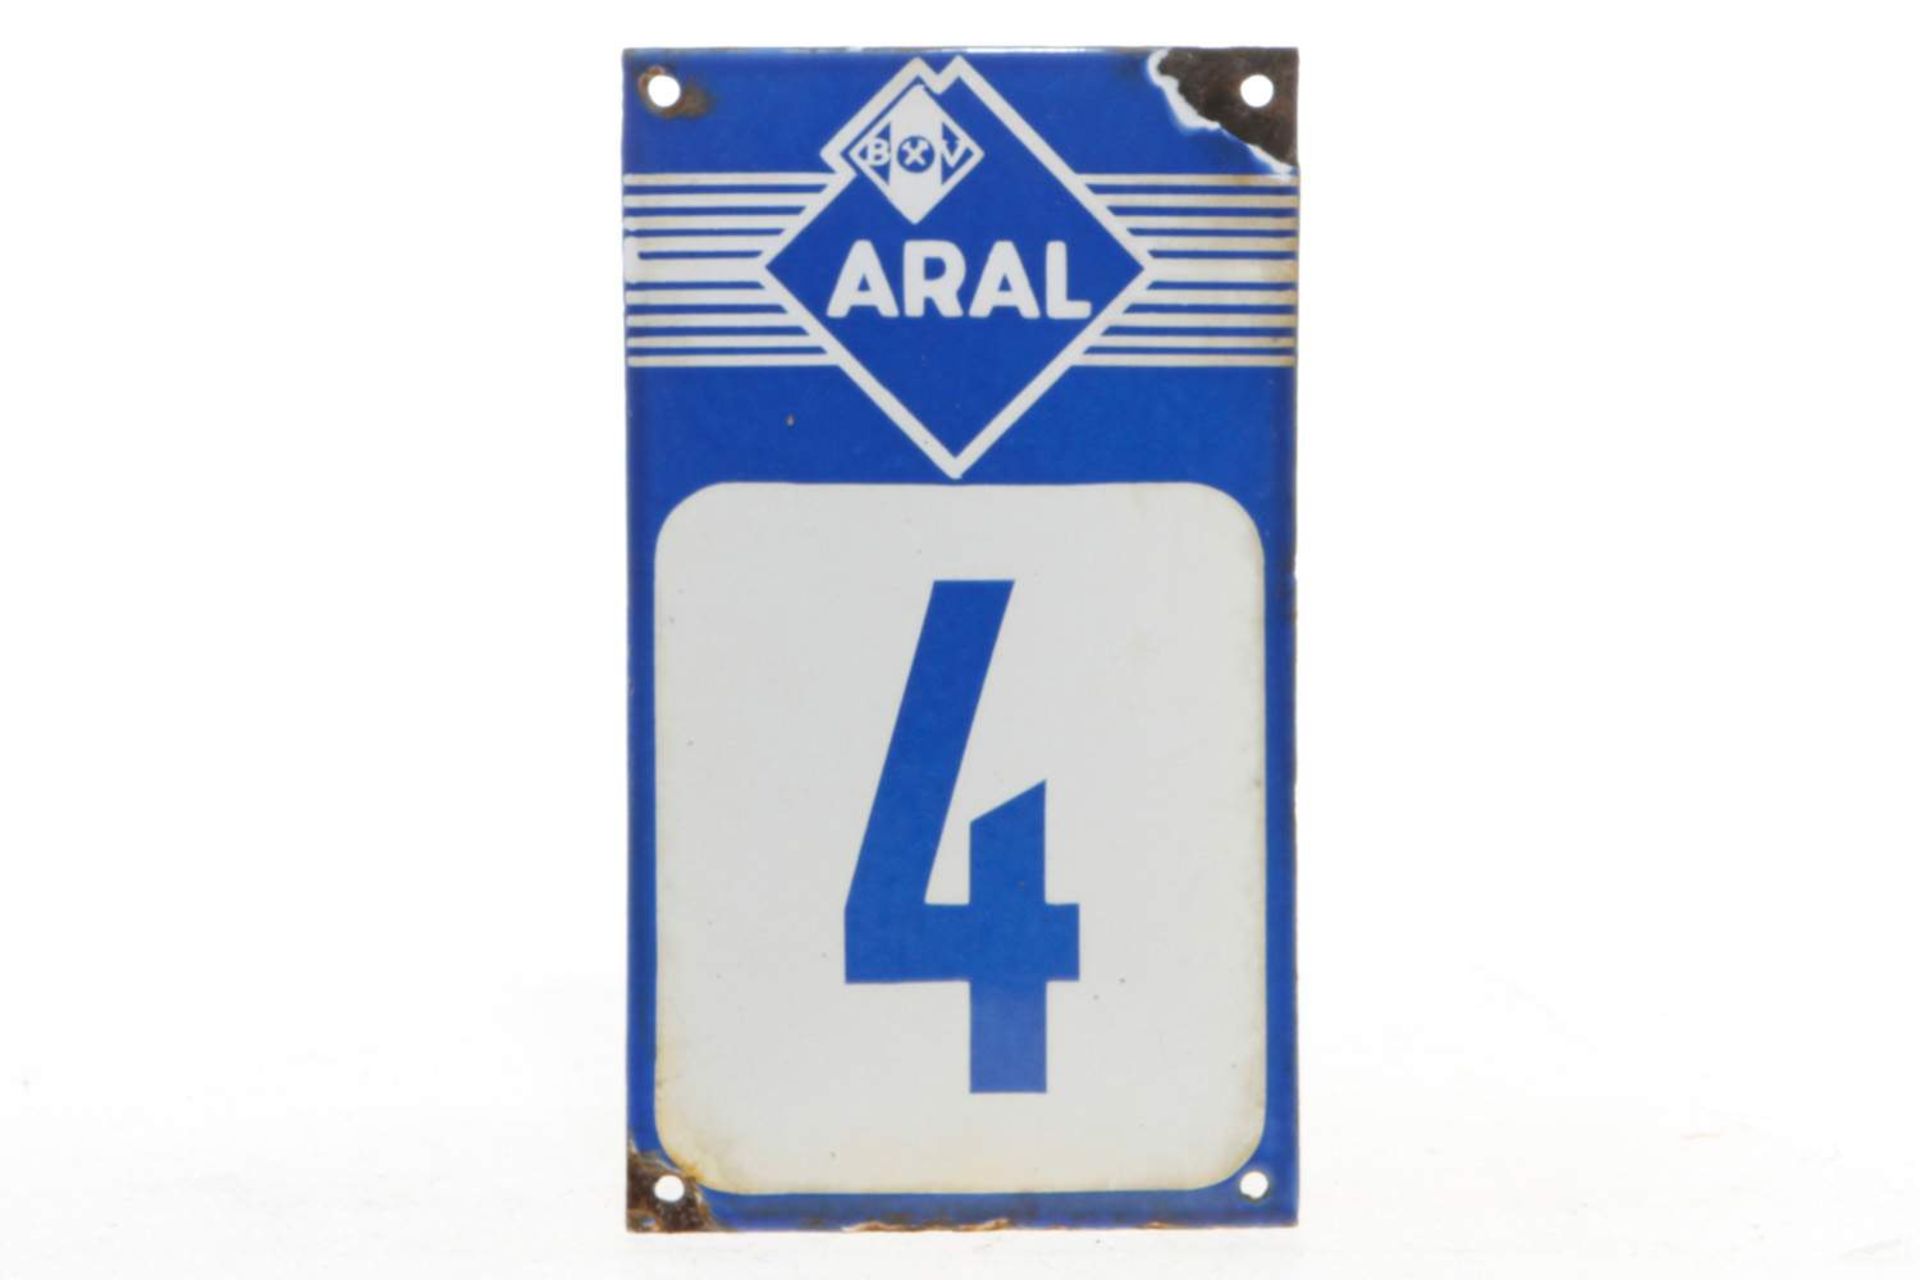 Emailleschild "ARAL 4", gewölbt, Abplatzungen, 12 x 21 cm, sonst guter Zustand